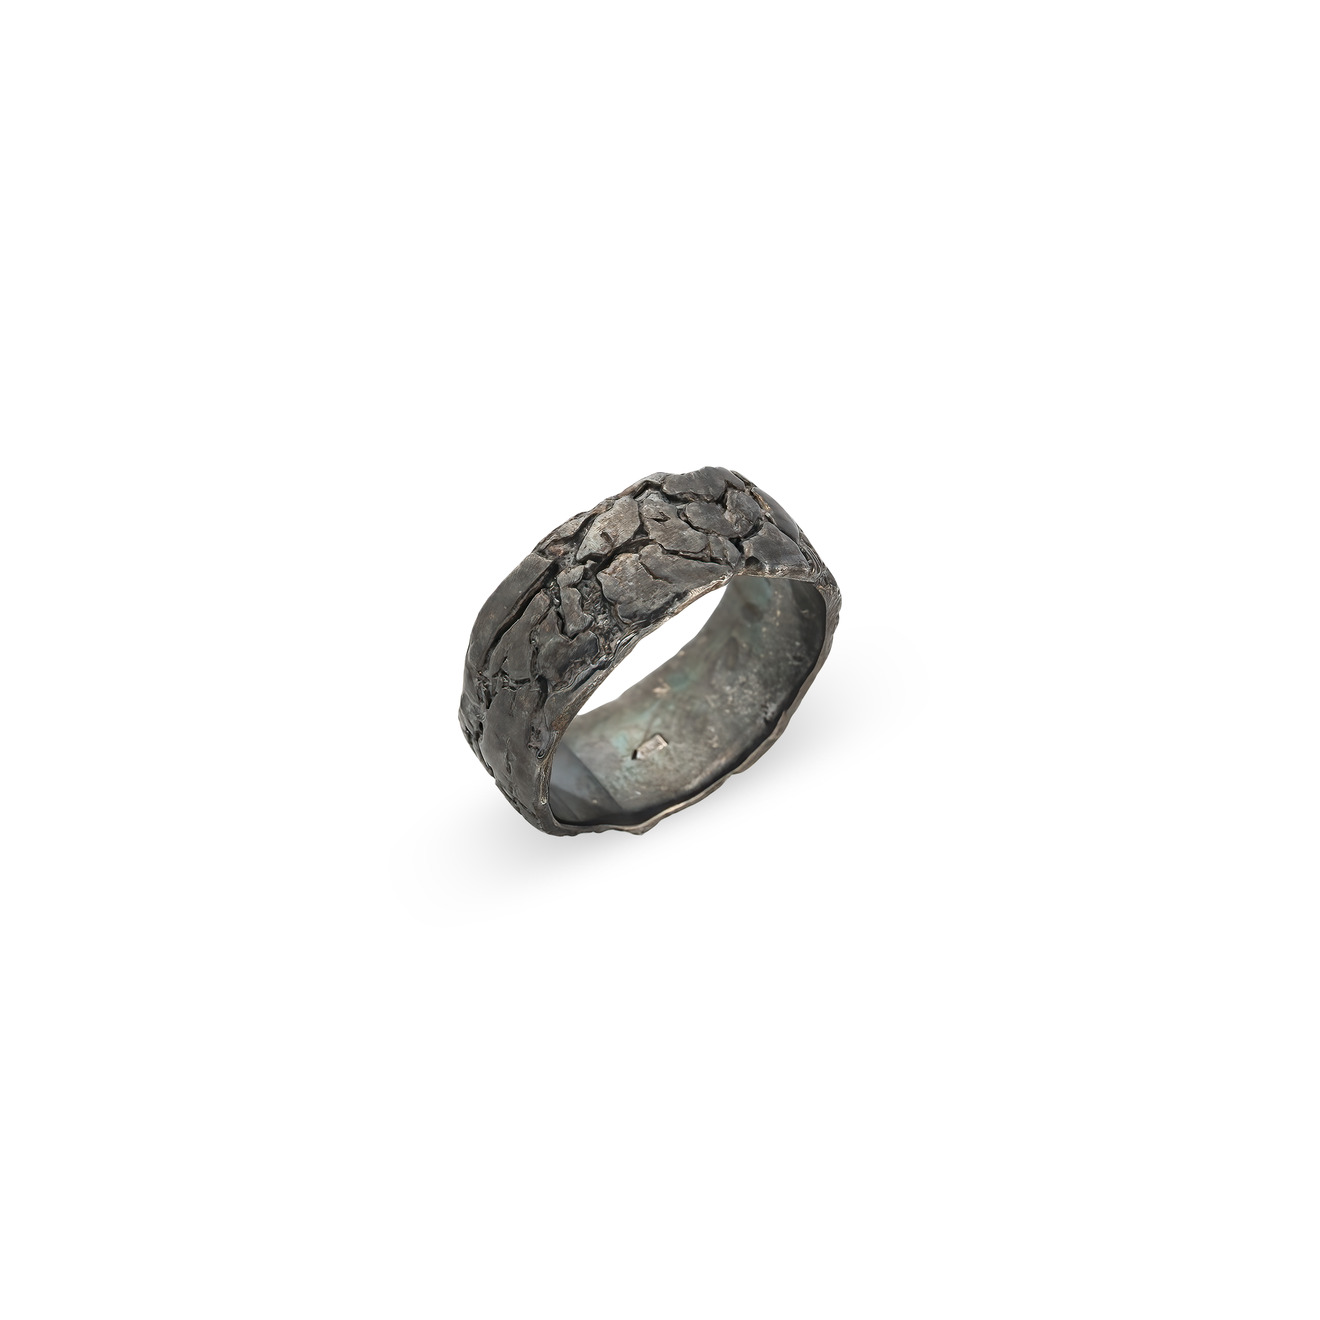 Kintsugi Jewelry Кольцо Milestone из серебра kintsugi jewelry кольцо hugs из серебра